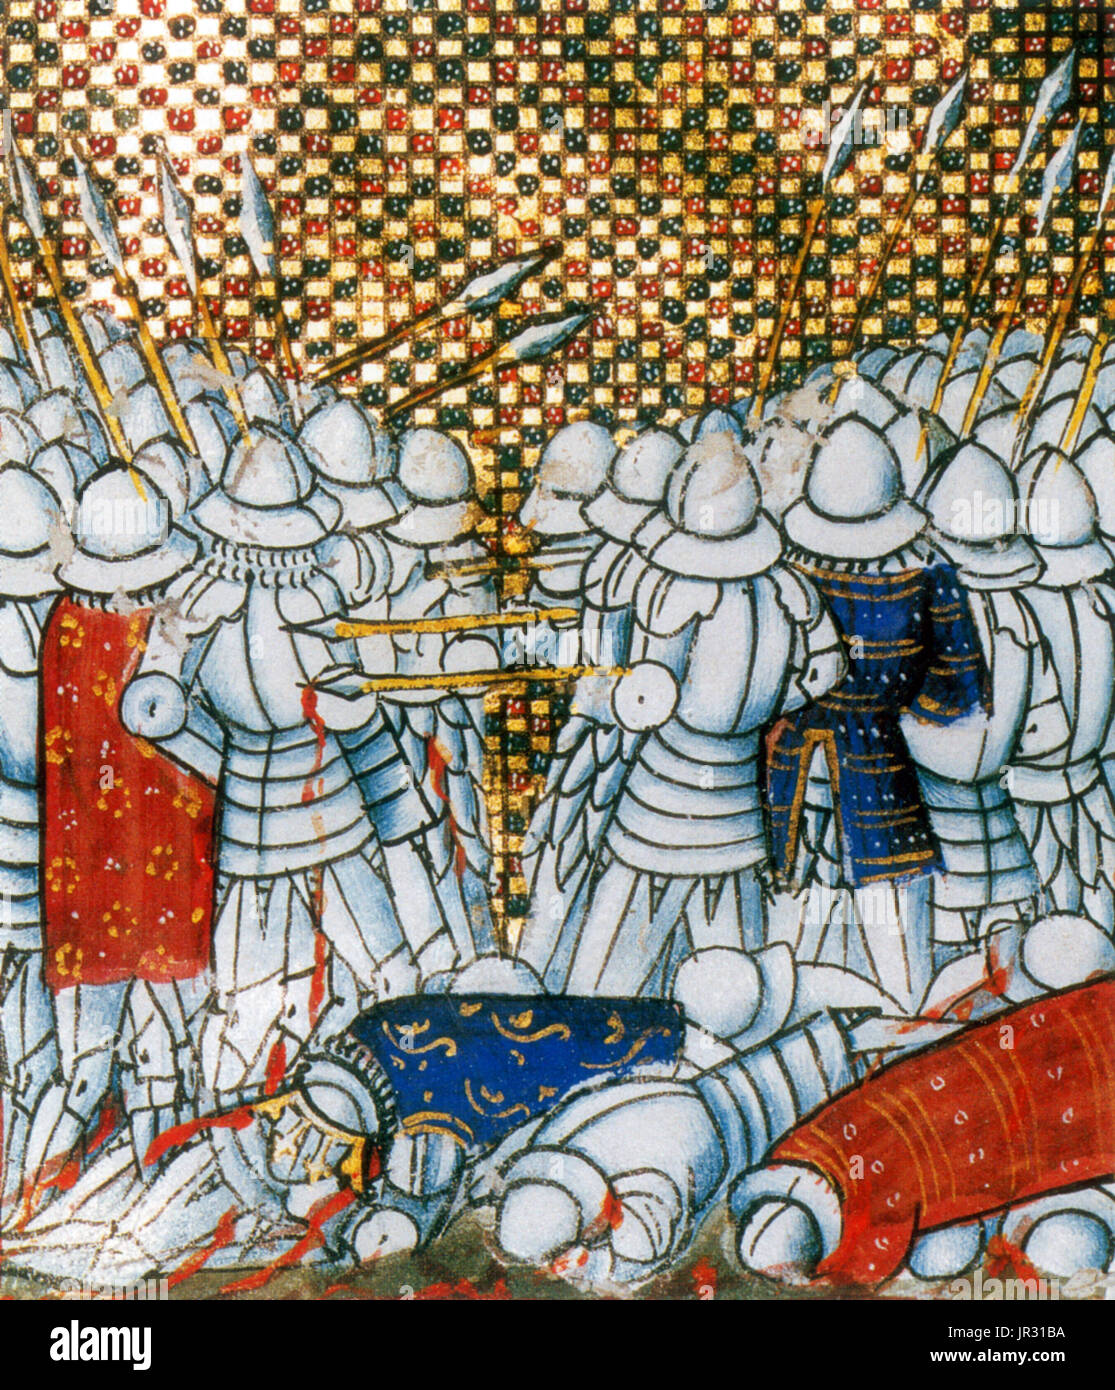 La Batalla de Crécy fue un Inglés victoria durante la fase de estilo eduardiano de la guerra de los Cien Años. La batalla se libró el 26 de agosto de 1346, cerca de Crécy, al norte de Francia. Un ejército de inglés, galés, y las tropas mercenarias aliada dirigida por Eduardo III de Inglaterra, comprometida y derrotaron a un ejército mucho mayor de Franceses, genoveses y mallorquina de tropas dirigidas por Felipe VI de Francia. Envalentonado por las lecciones de la flexibilidad táctica y la utilización de terrenos previamente extraídas de los sajones, los vikingos, los musulmanes y los últimos combates con los escoceses, los ingleses consiguieron una importante victoria del ejército. La batalla anunciaba la subida Foto de stock